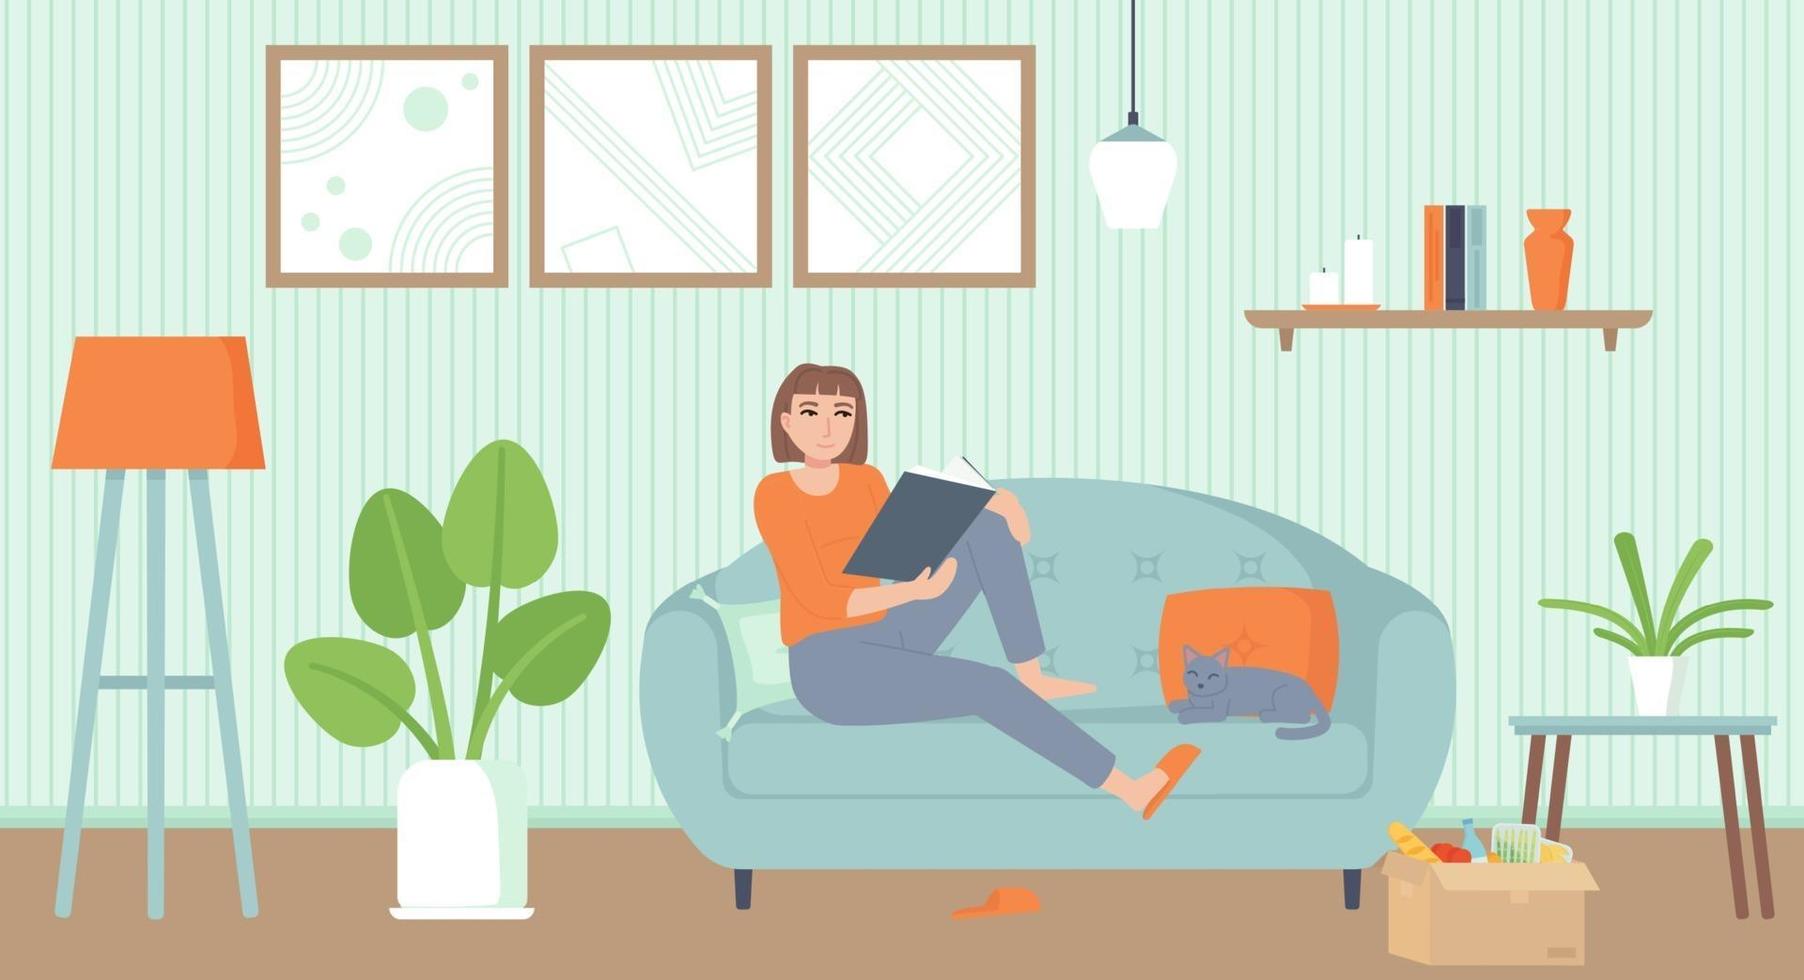 entretenimiento en el hogar período de aislamiento concepto de relajación acogedora sala de estar interior con una niña gato en el sofá leyendo un libro stock vector ilustración en estilo plano de dibujos animados